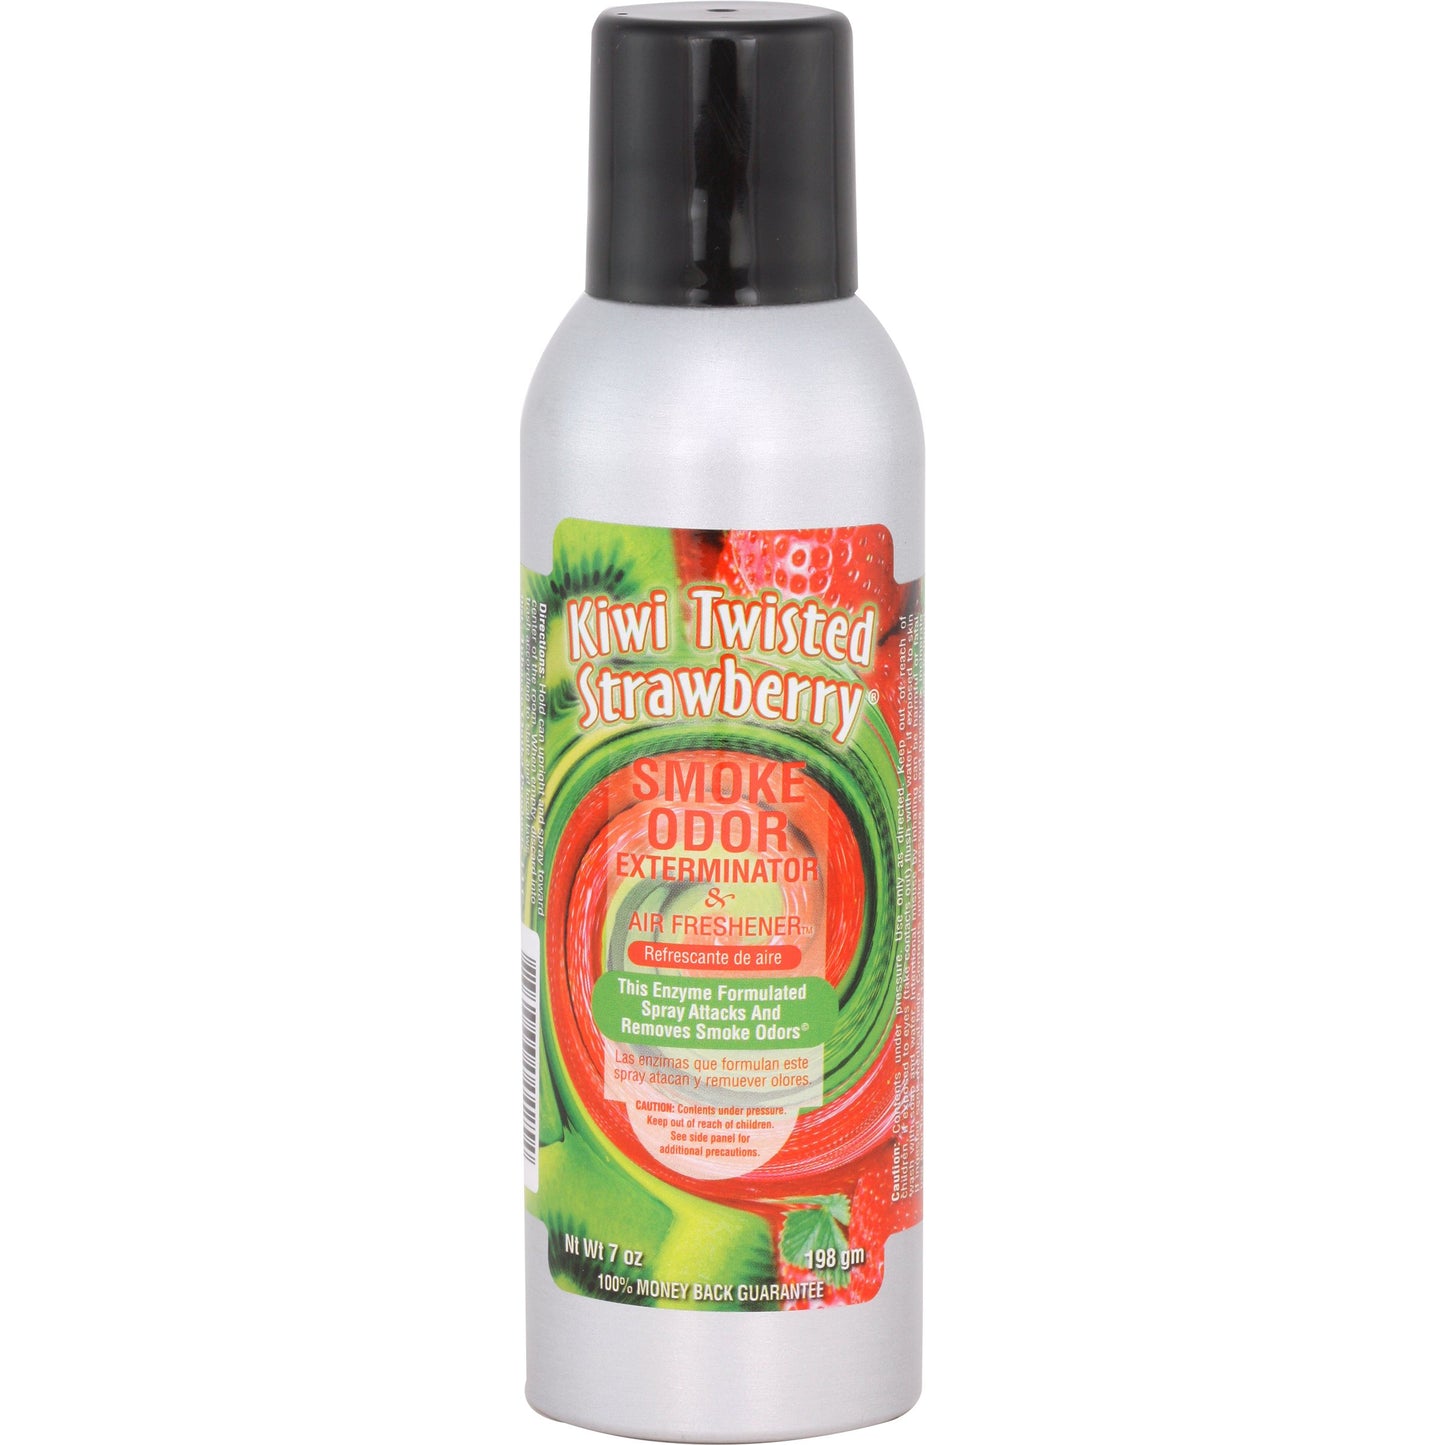 Smoke Odor Exterminator Spray 7oz - Kiwi Twisted Strawberry